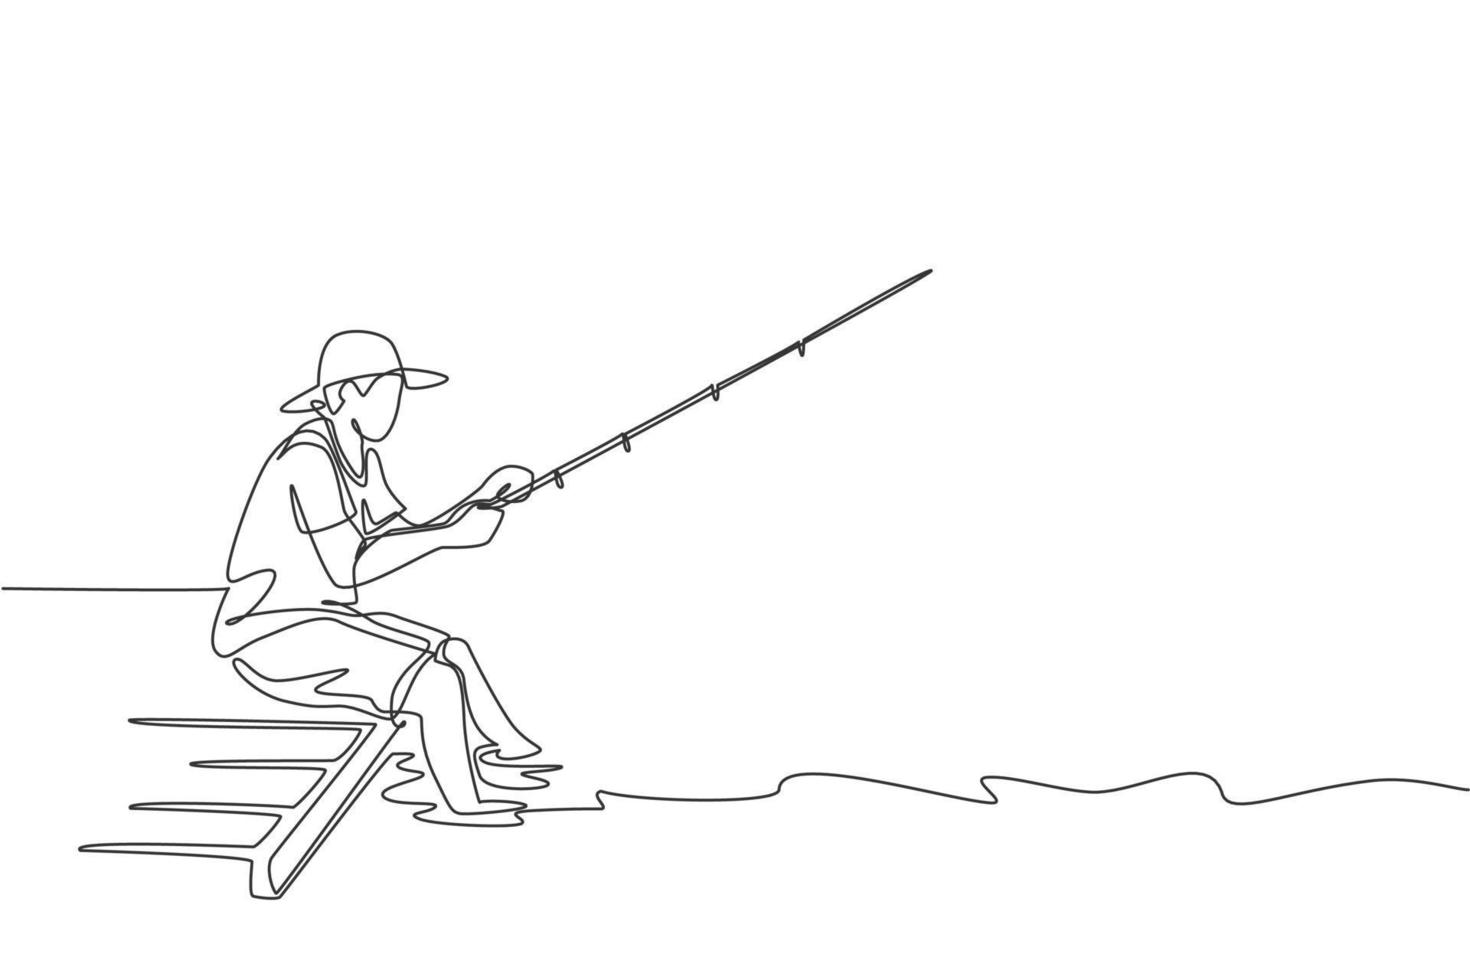 een enkele lijntekening jonge gelukkige visser man aanbrengen op houten pier en vreedzaam vissen vector grafische illustratie. vakantie reizen voor visserij hobby concept. modern ononderbroken lijntekeningontwerp